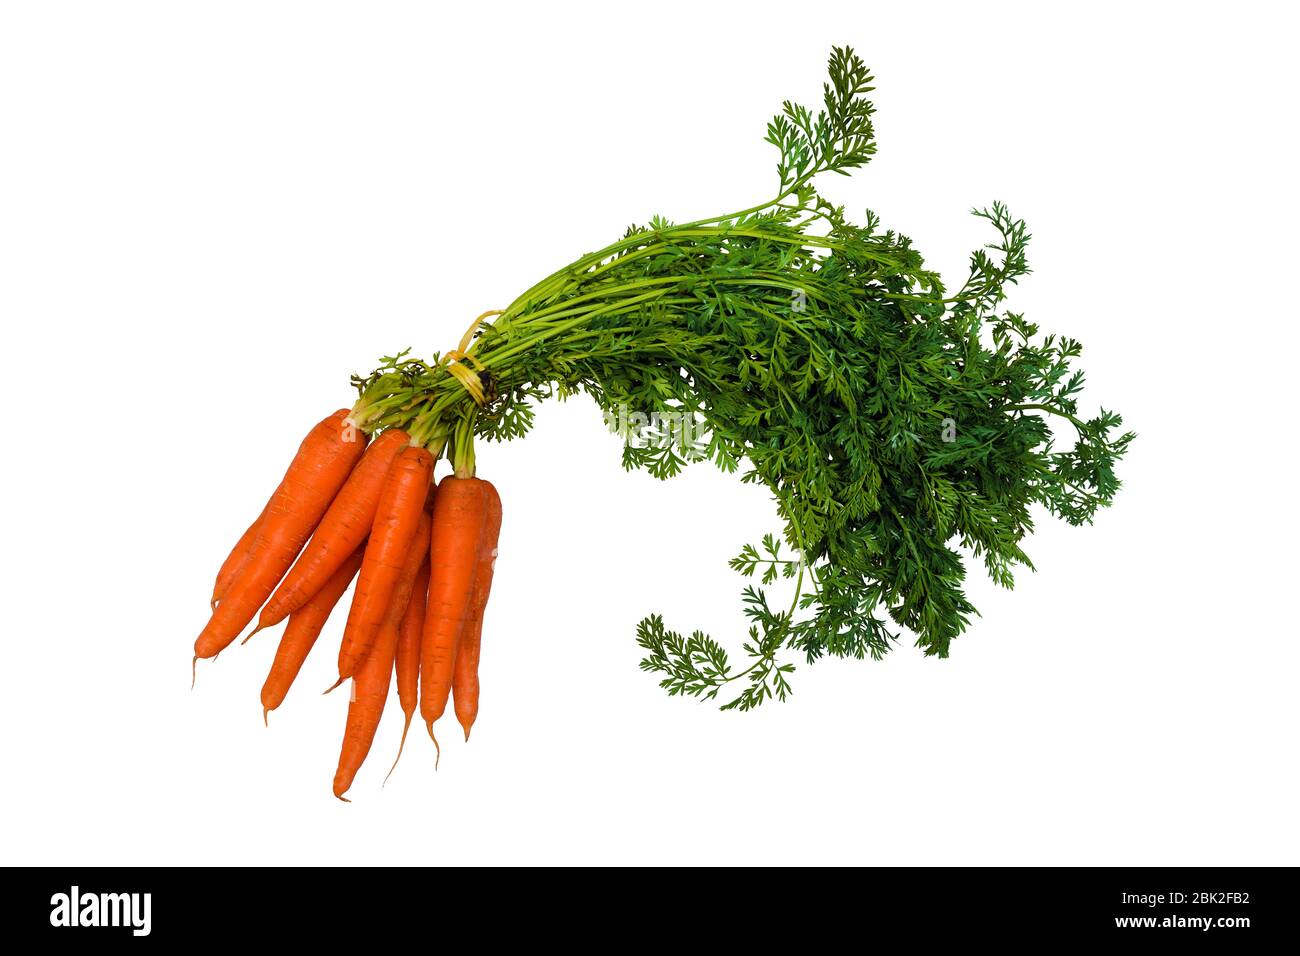 mazzo di carote crude arancioni e verdi su sfondo bianco Foto Stock